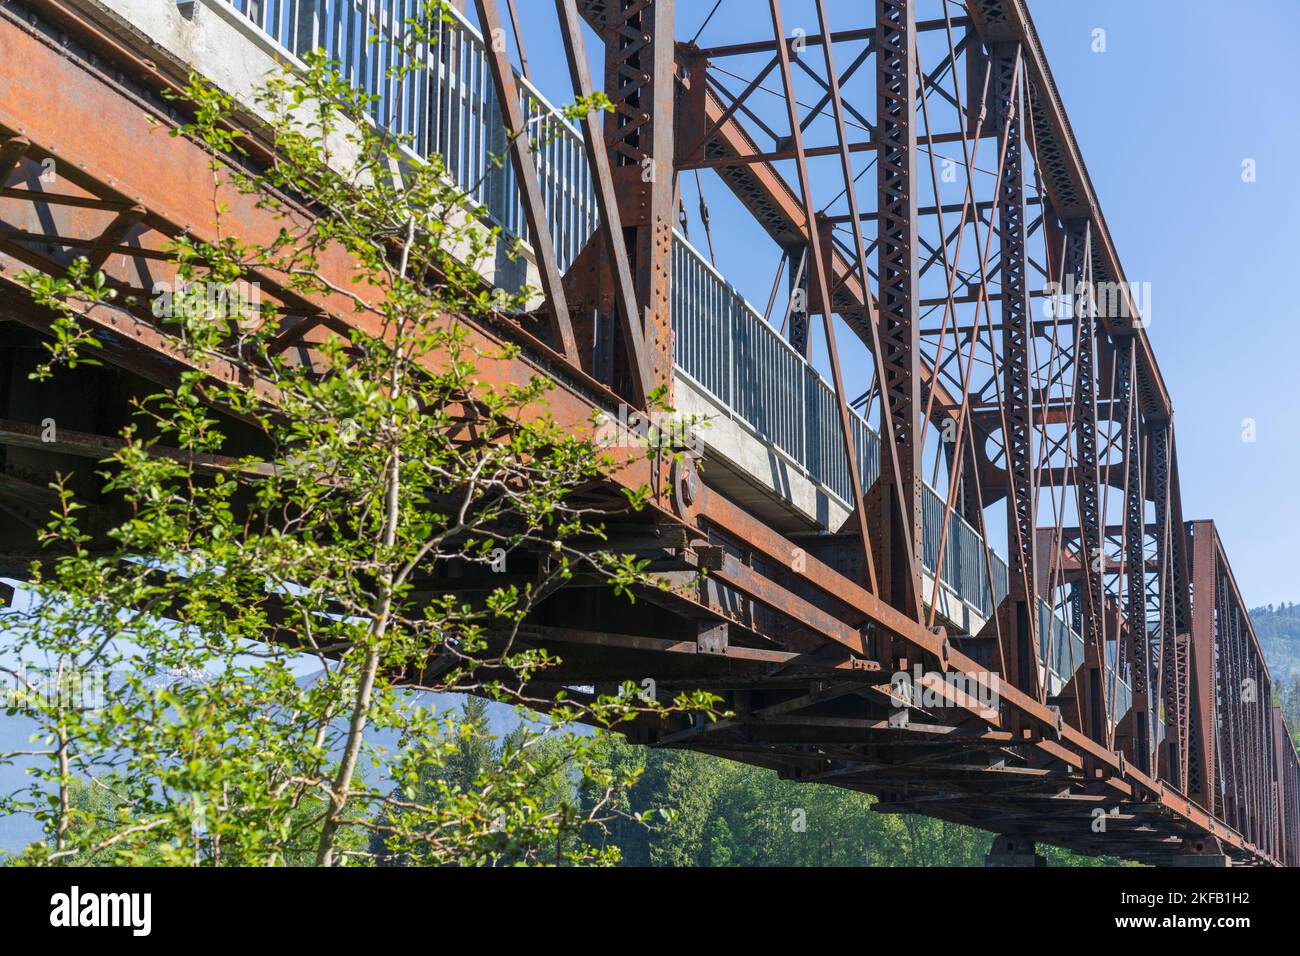 Construit il y a plus d'un siècle en 1920, l'ancien pont ferroviaire au-dessus de la rivière Clark Fork dans le comté de Bonner, Idaho, fait 996 pieds de long, un exploit d'ingénierie. Banque D'Images